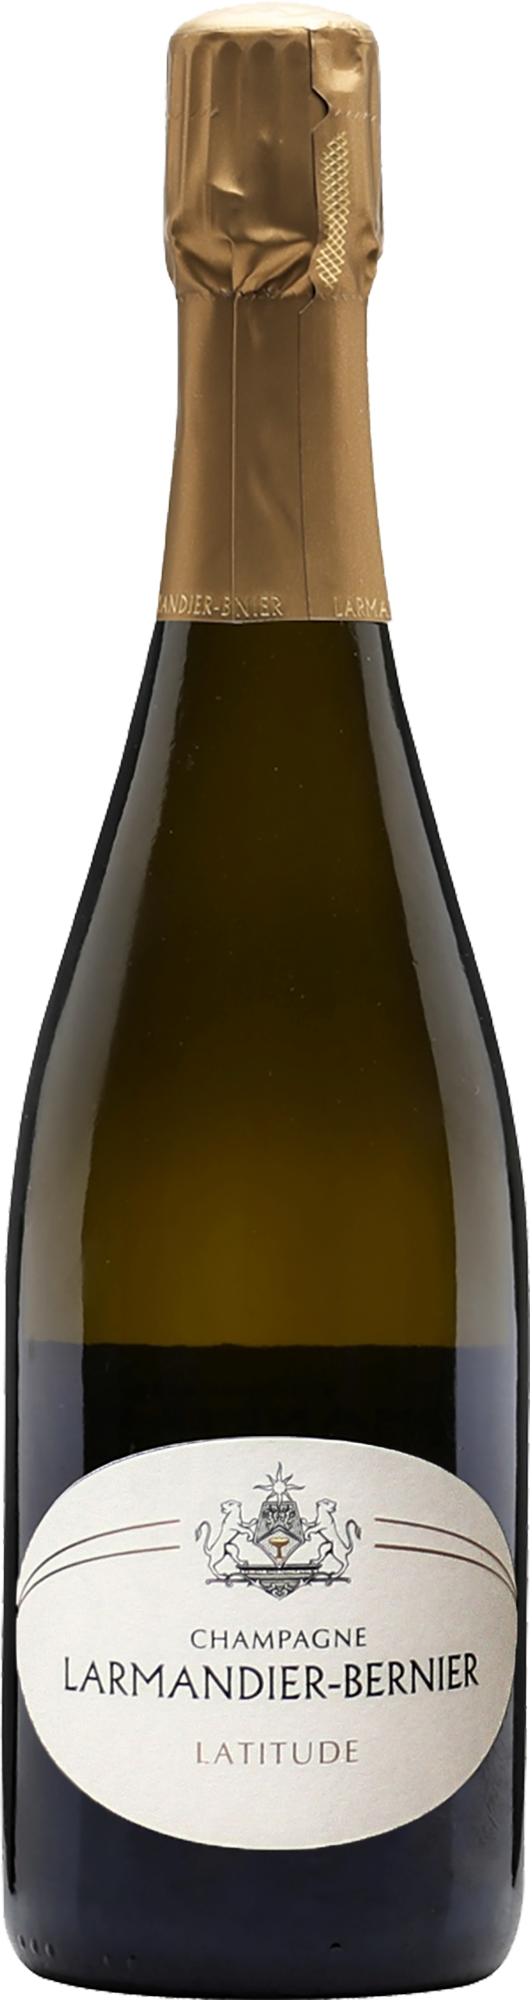 Champagne Larmandier-Bernier Latitude Blanc de Blancs NV (Base 19. Disg. May 2022)